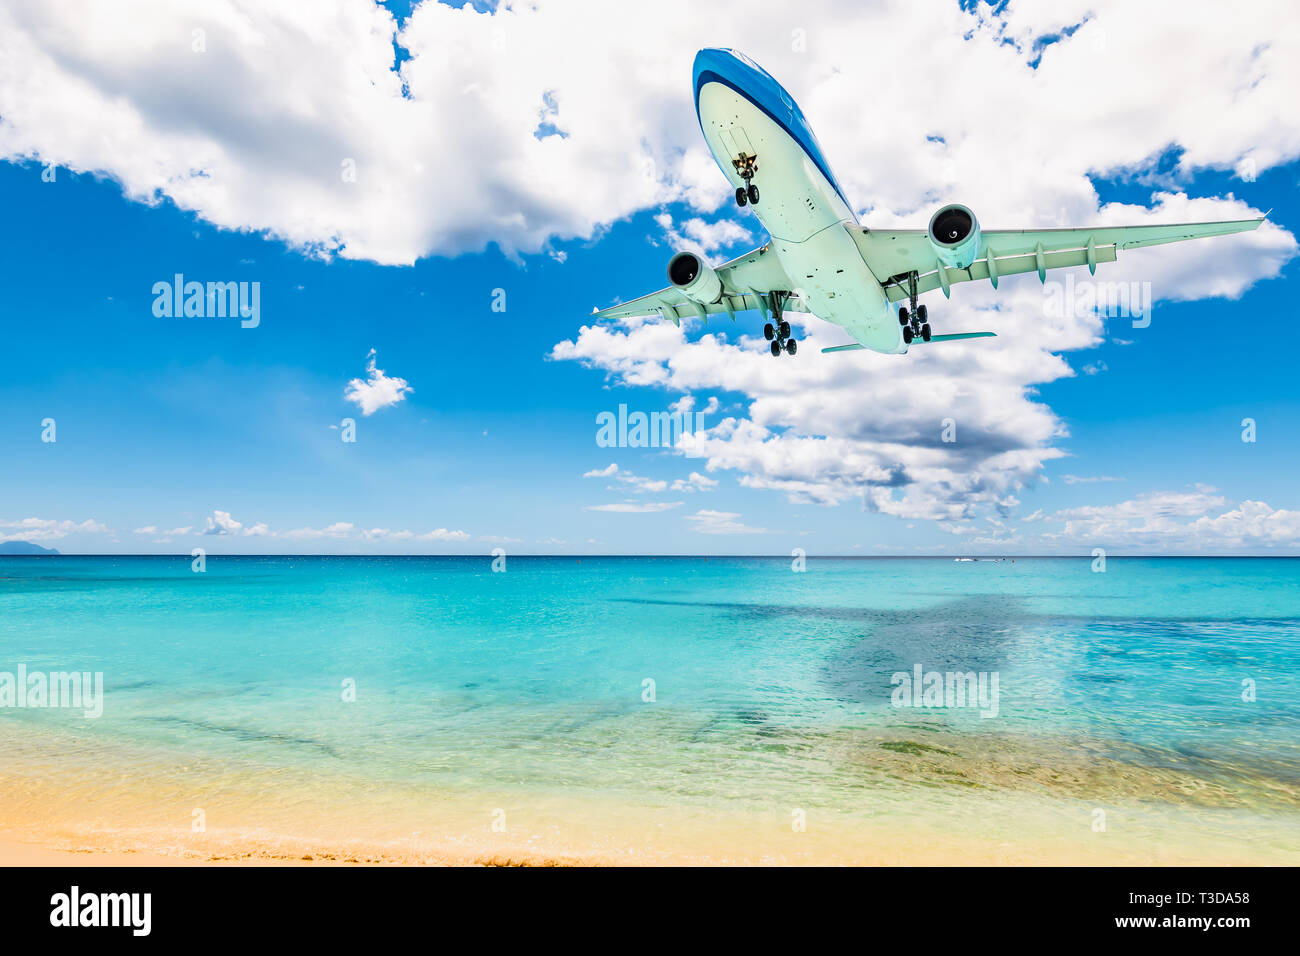 Plan situé au-dessus de la mer et de la plage à St Maarten, Antilles. Voyage et du transport aérien. Banque D'Images